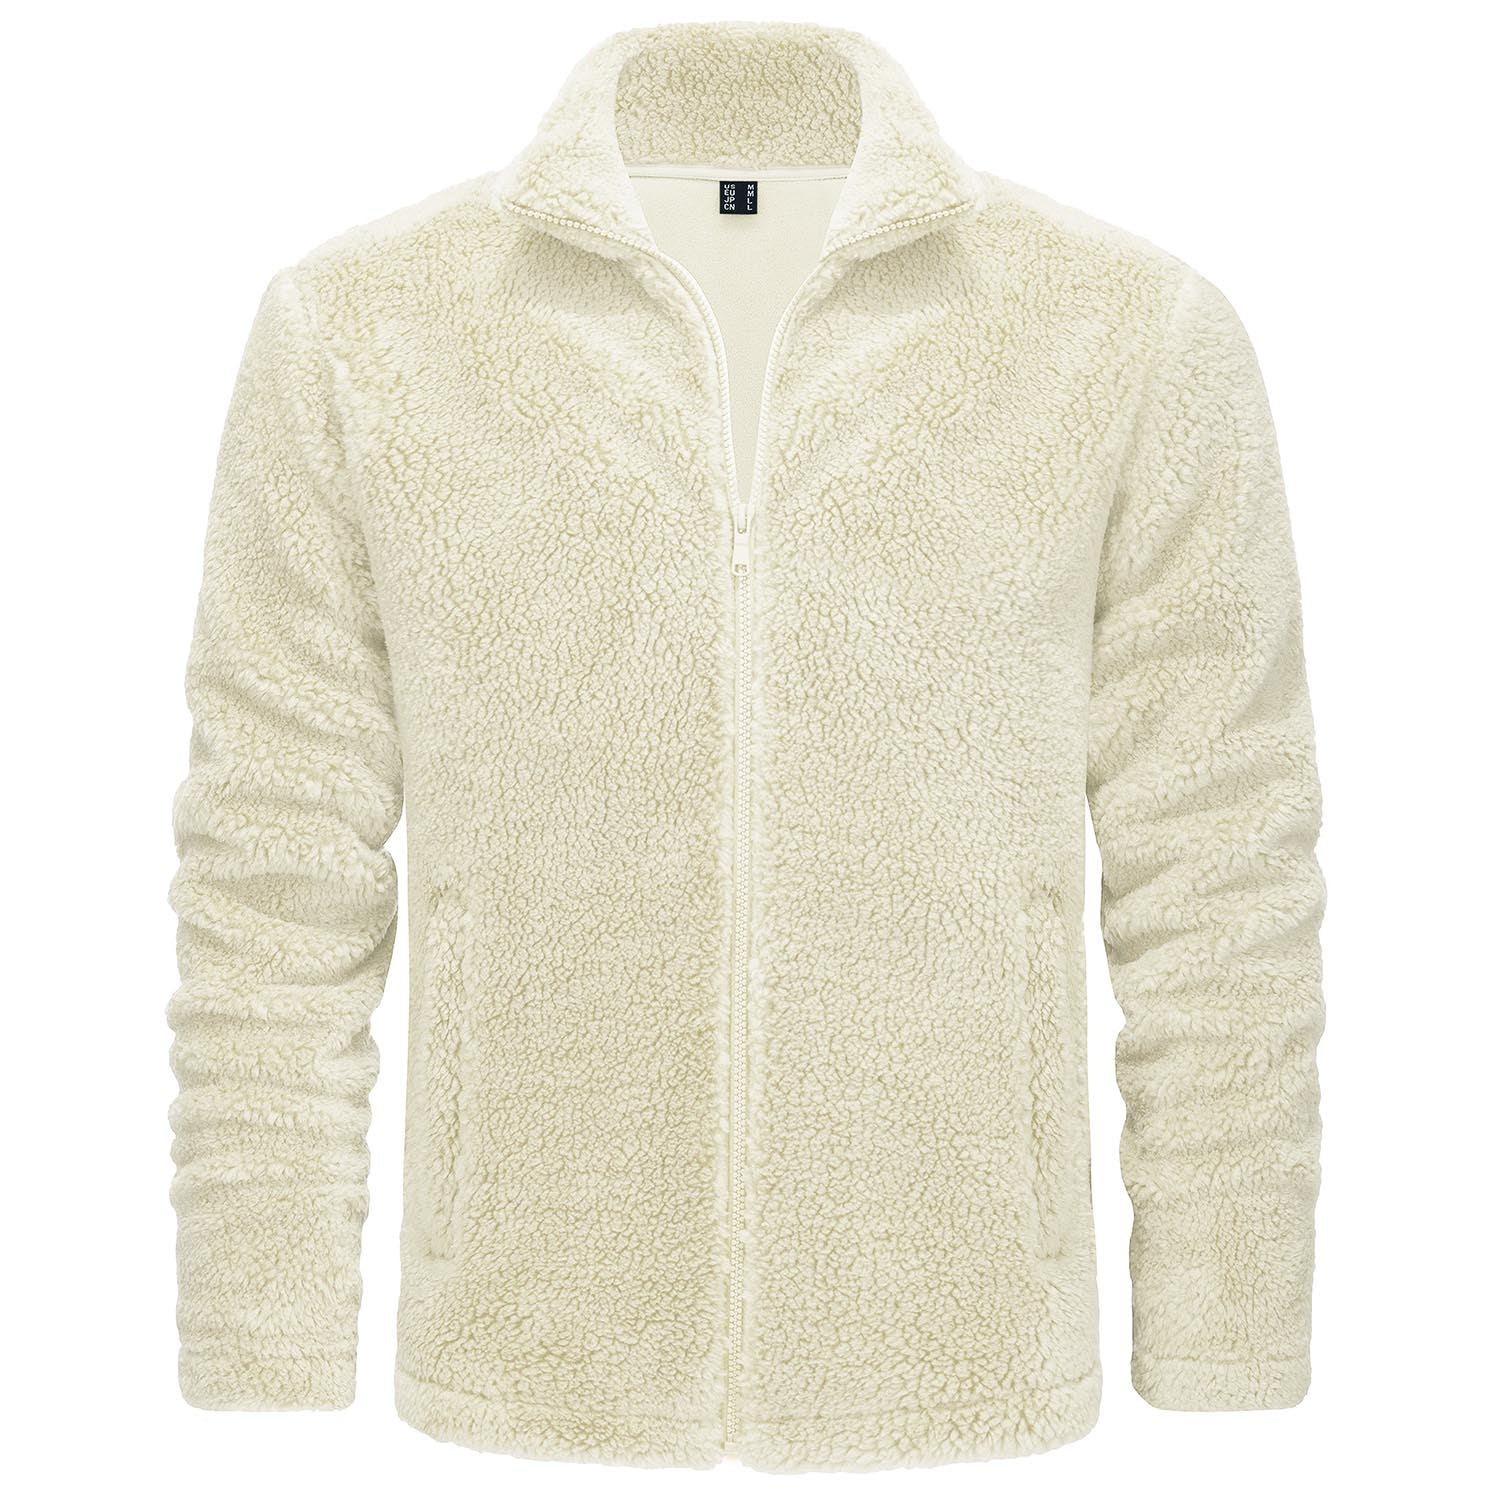 Men's Fluffy Sherpa Fleece Jacket Full Zip Casual Winter Outwear